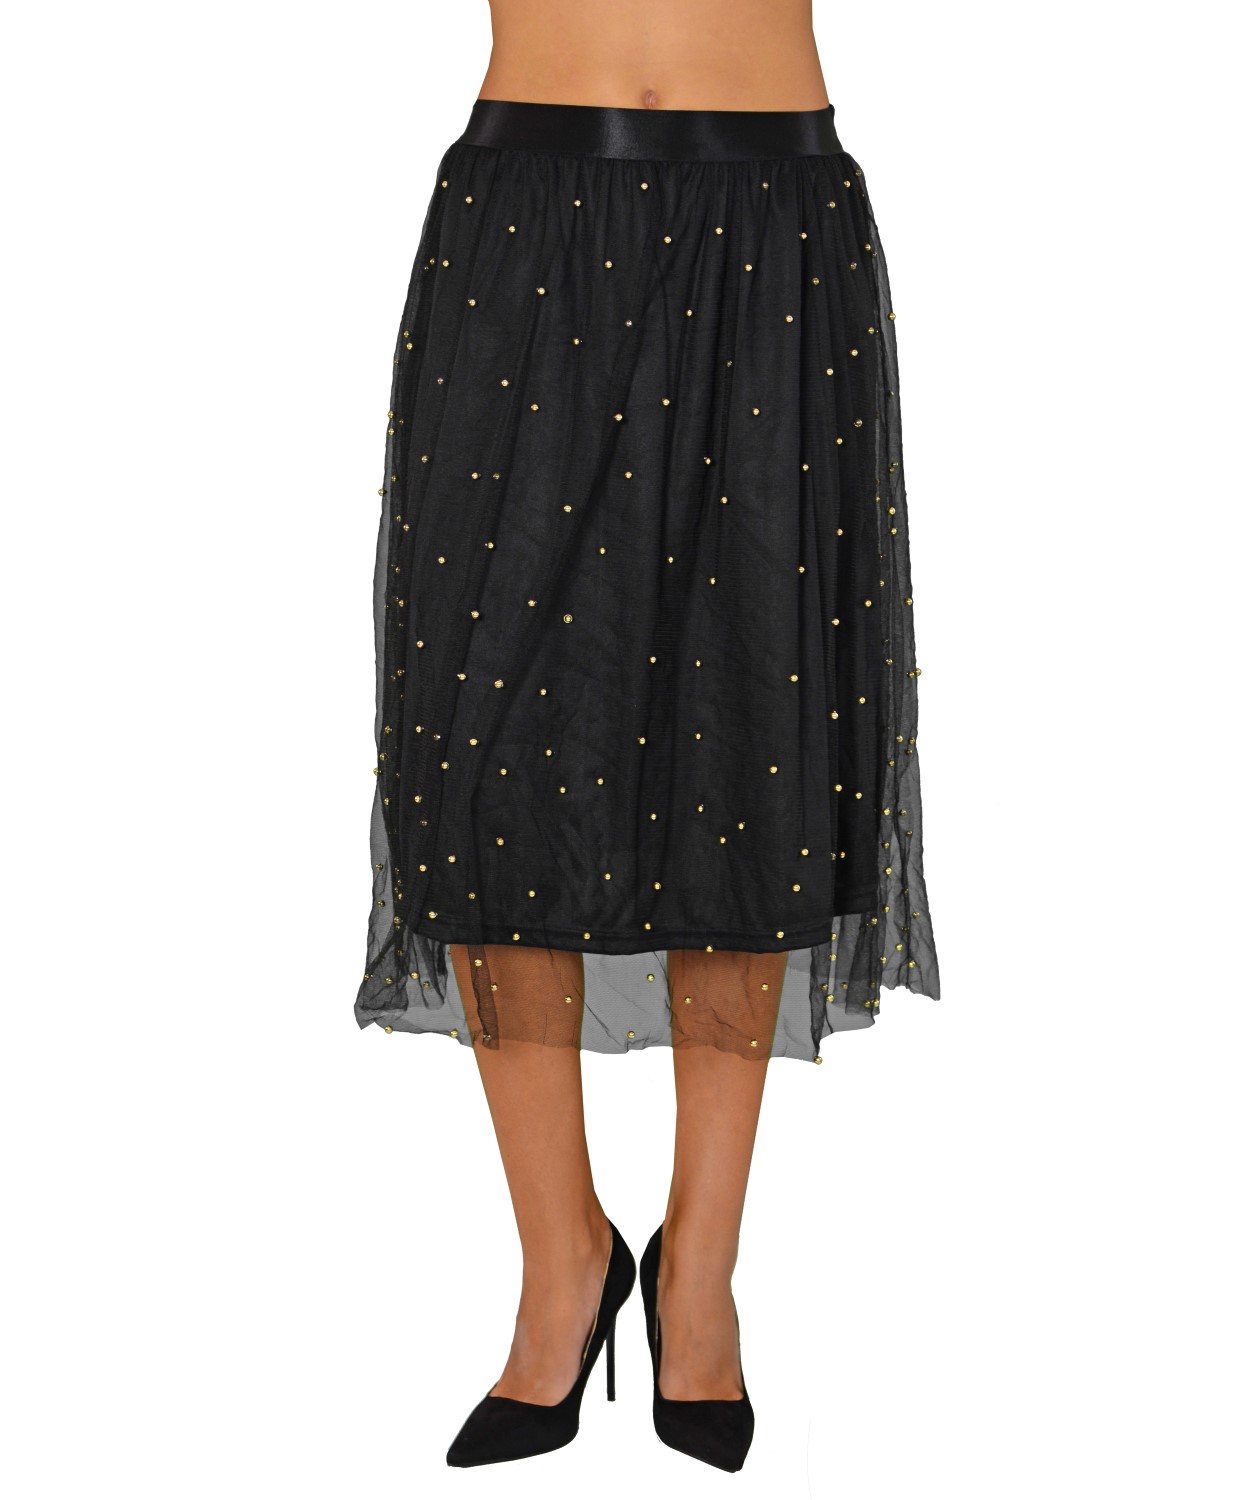 Γυναικεία φούστα με τούλι και χάντρες μαύρη Benissimo 17556